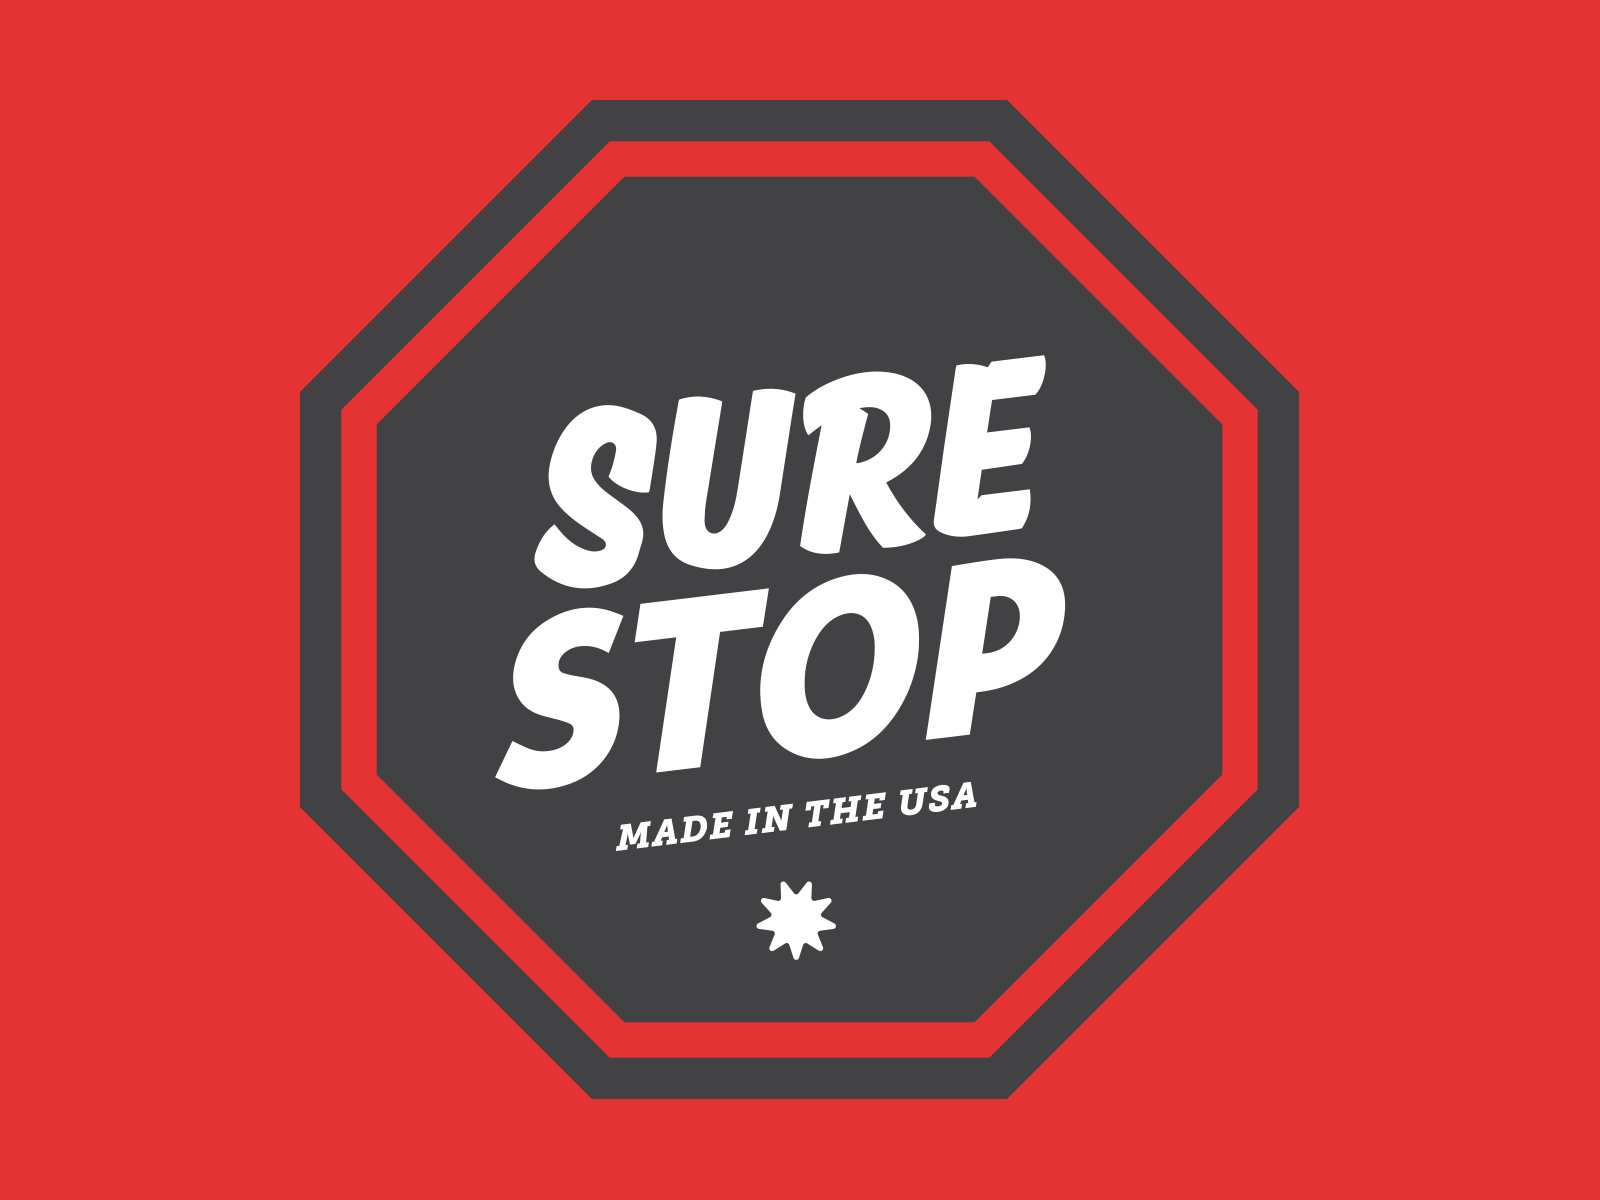 Sure Stop - logo comps